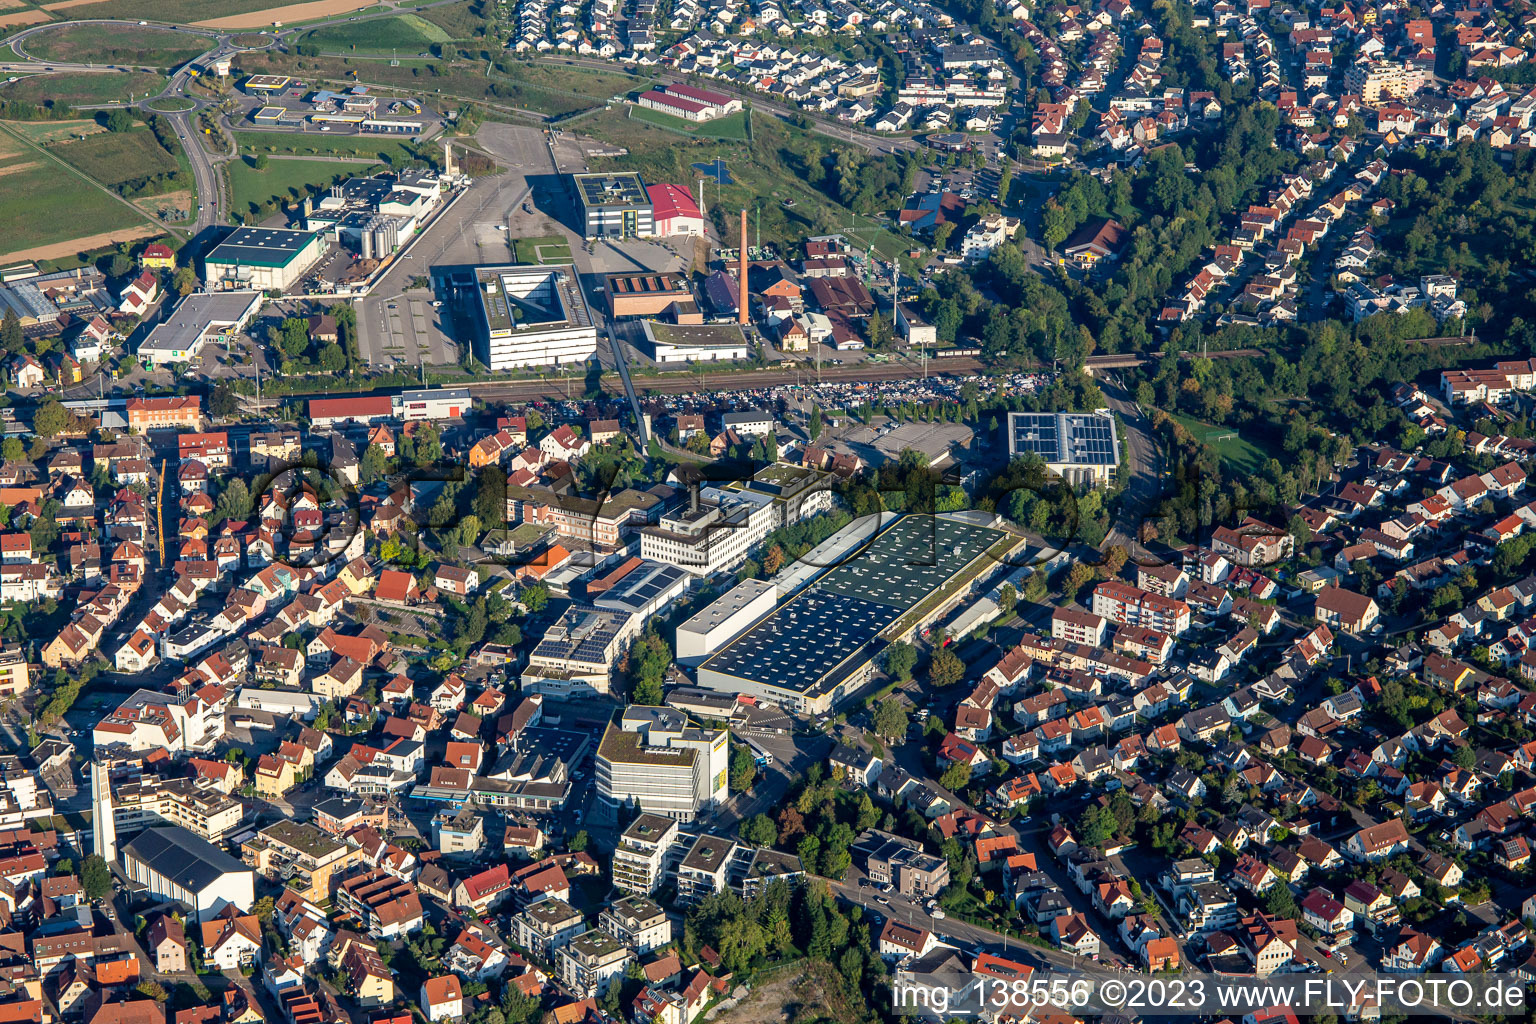 Luftbild von Alfred Kärcher GmbH & Co. KG in Winnenden im Bundesland Baden-Württemberg, Deutschland